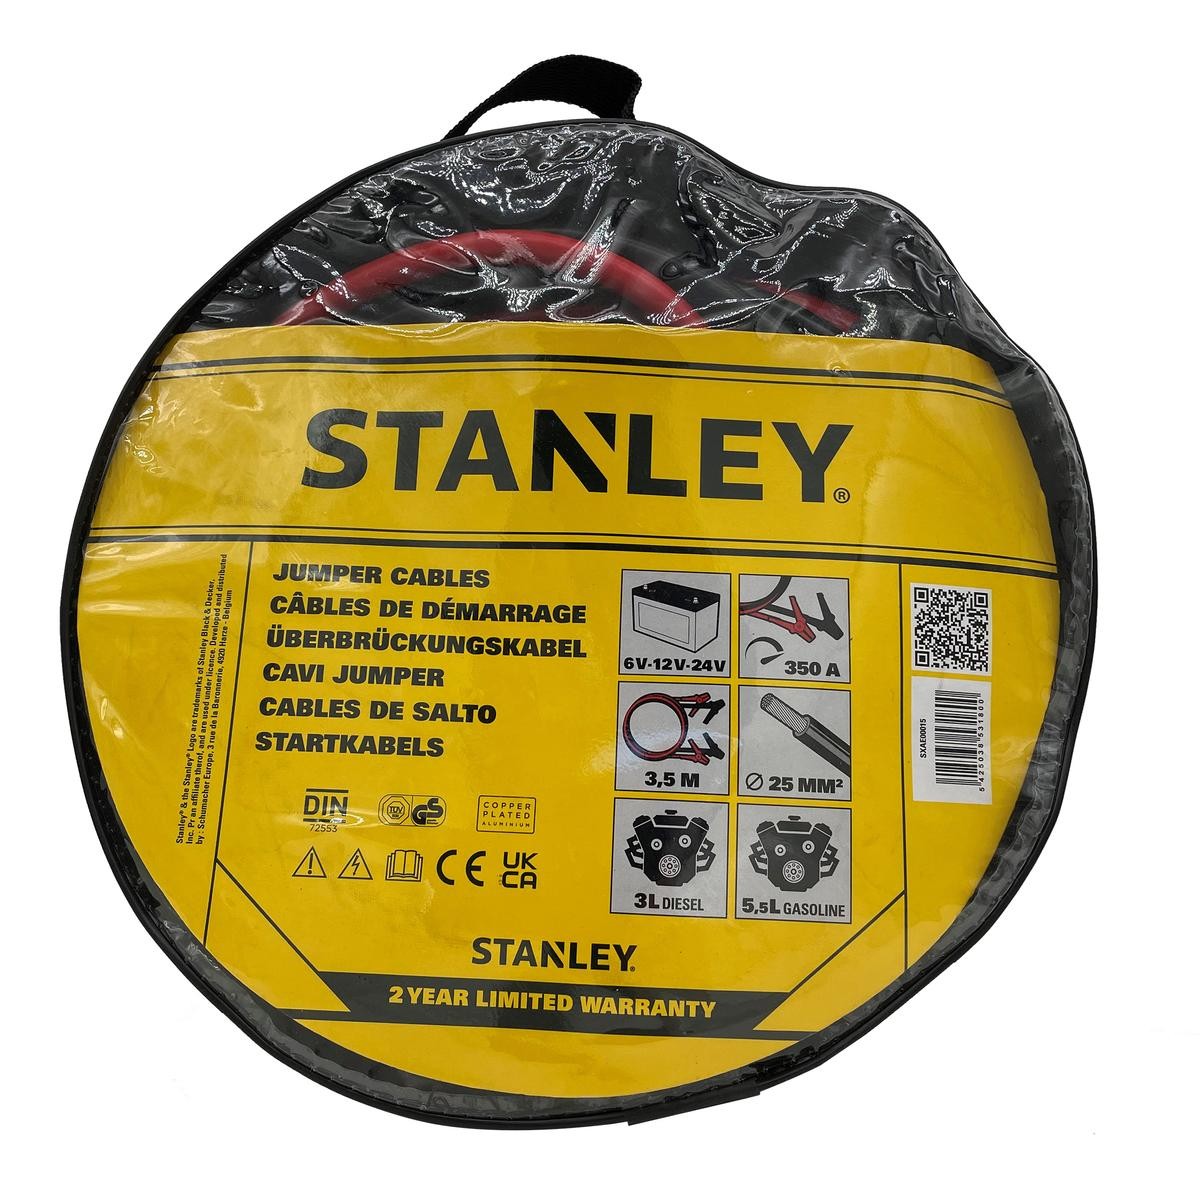 Start kabel Stanley SXAE00015 rating